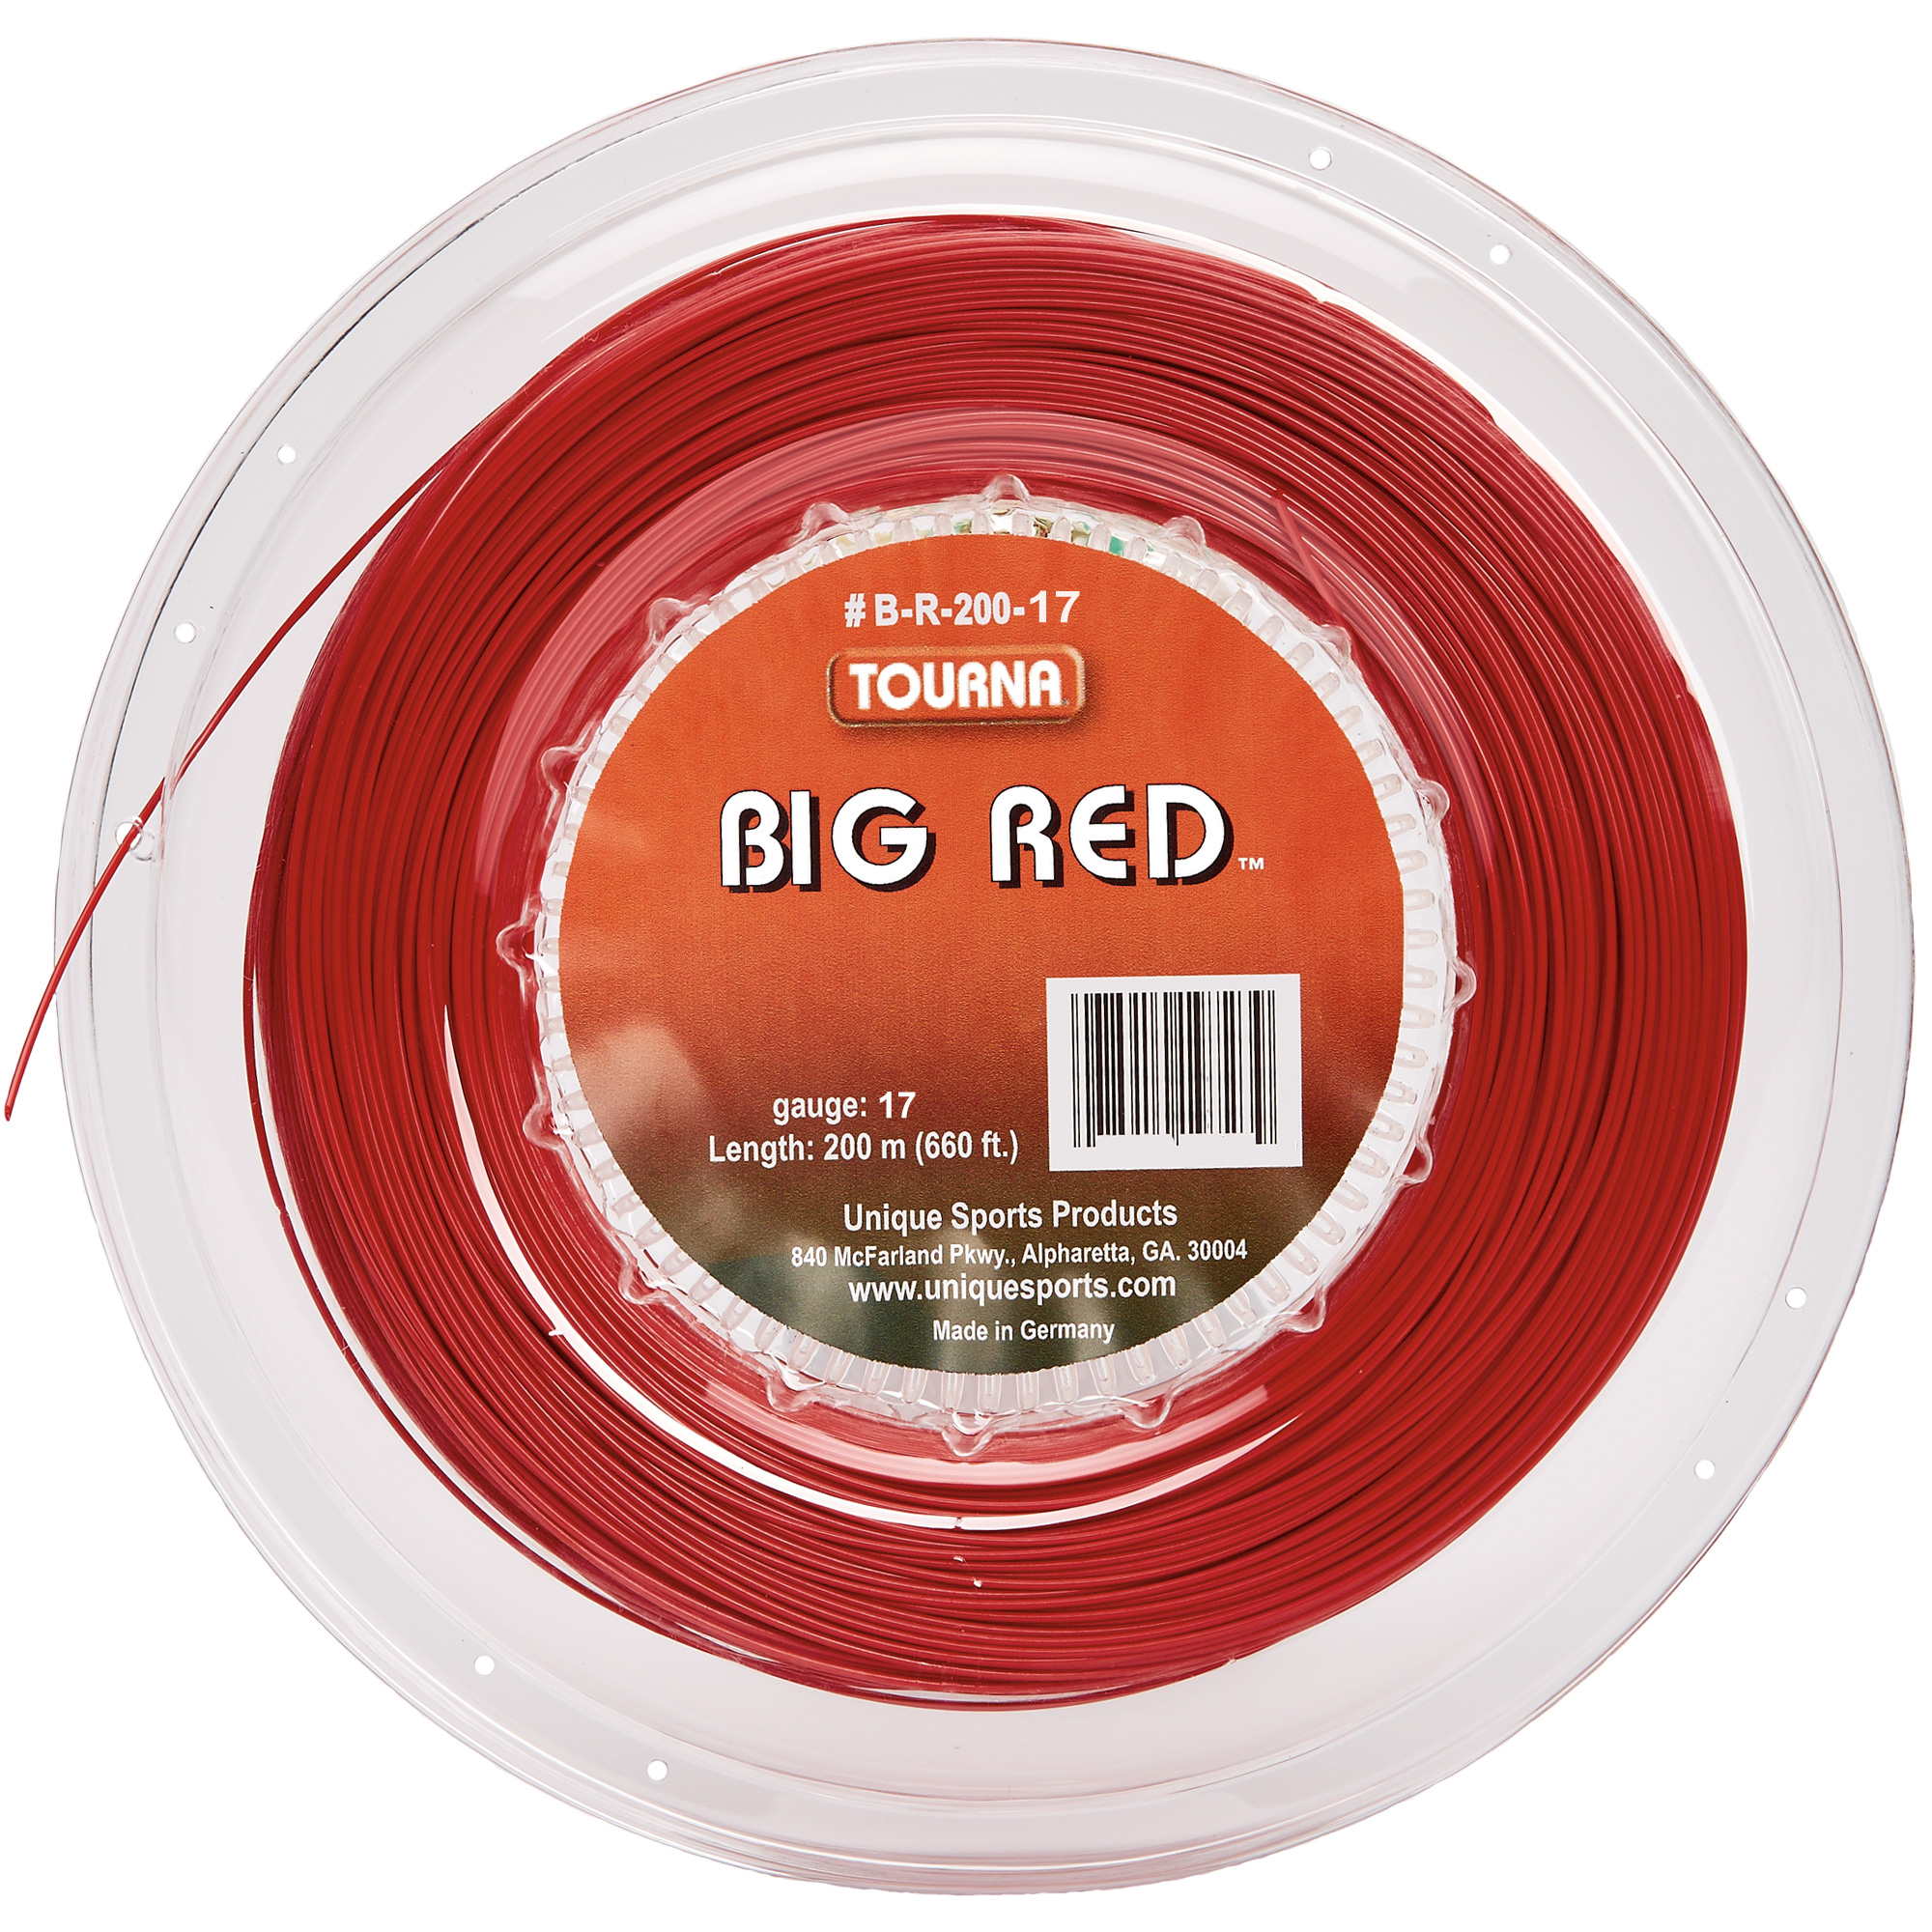 Tourna Big Red 18g Tennis String (Reel)